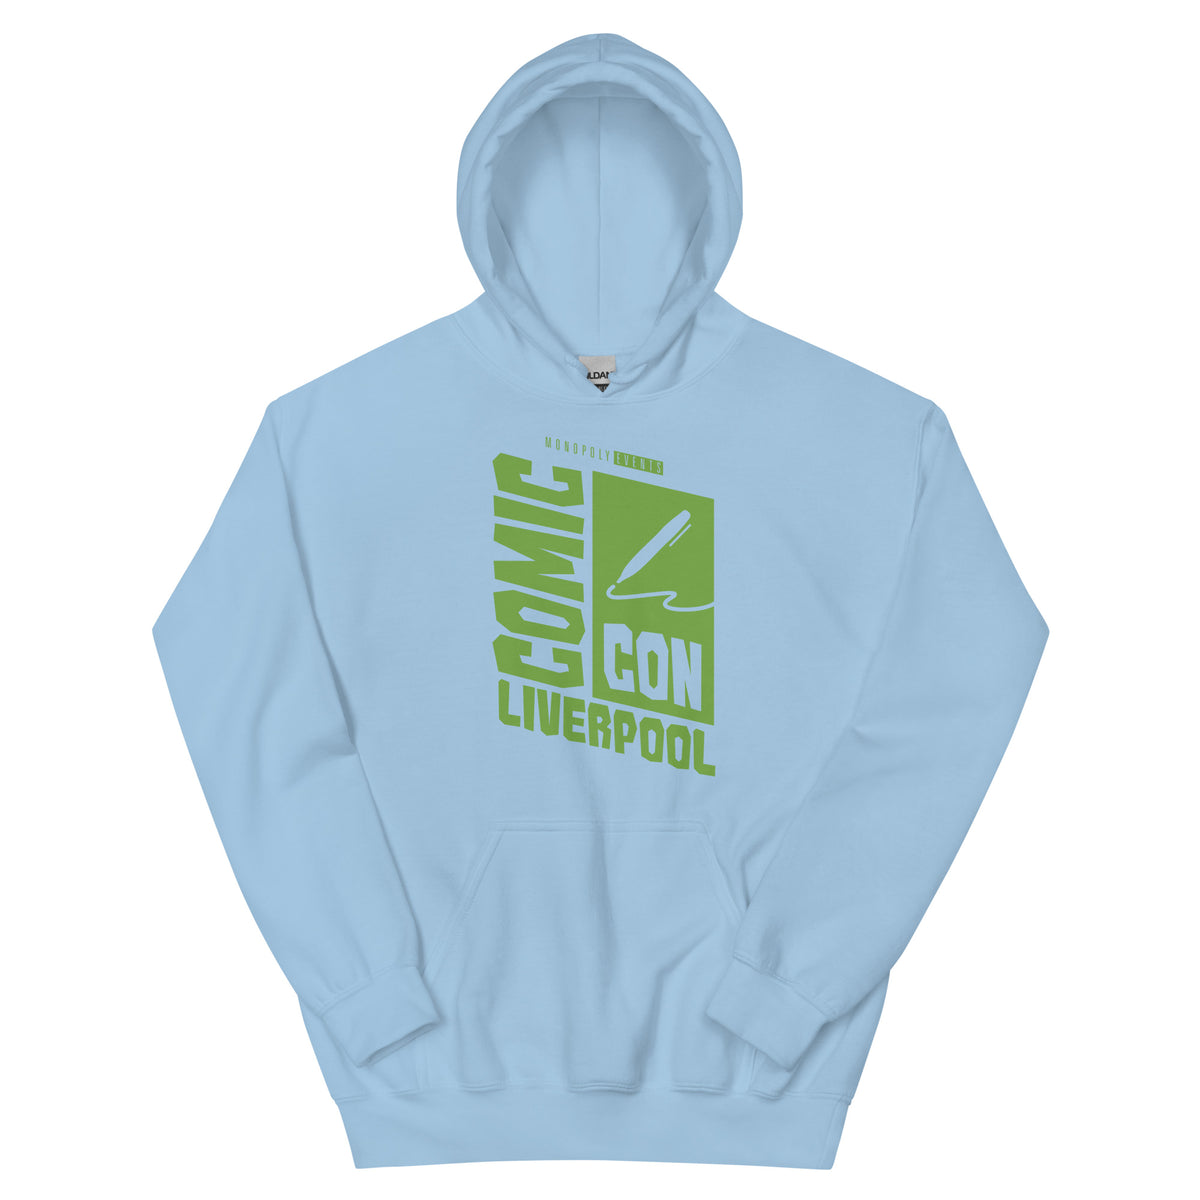 Liverpool Comic Con Logo Unisex Hoodie